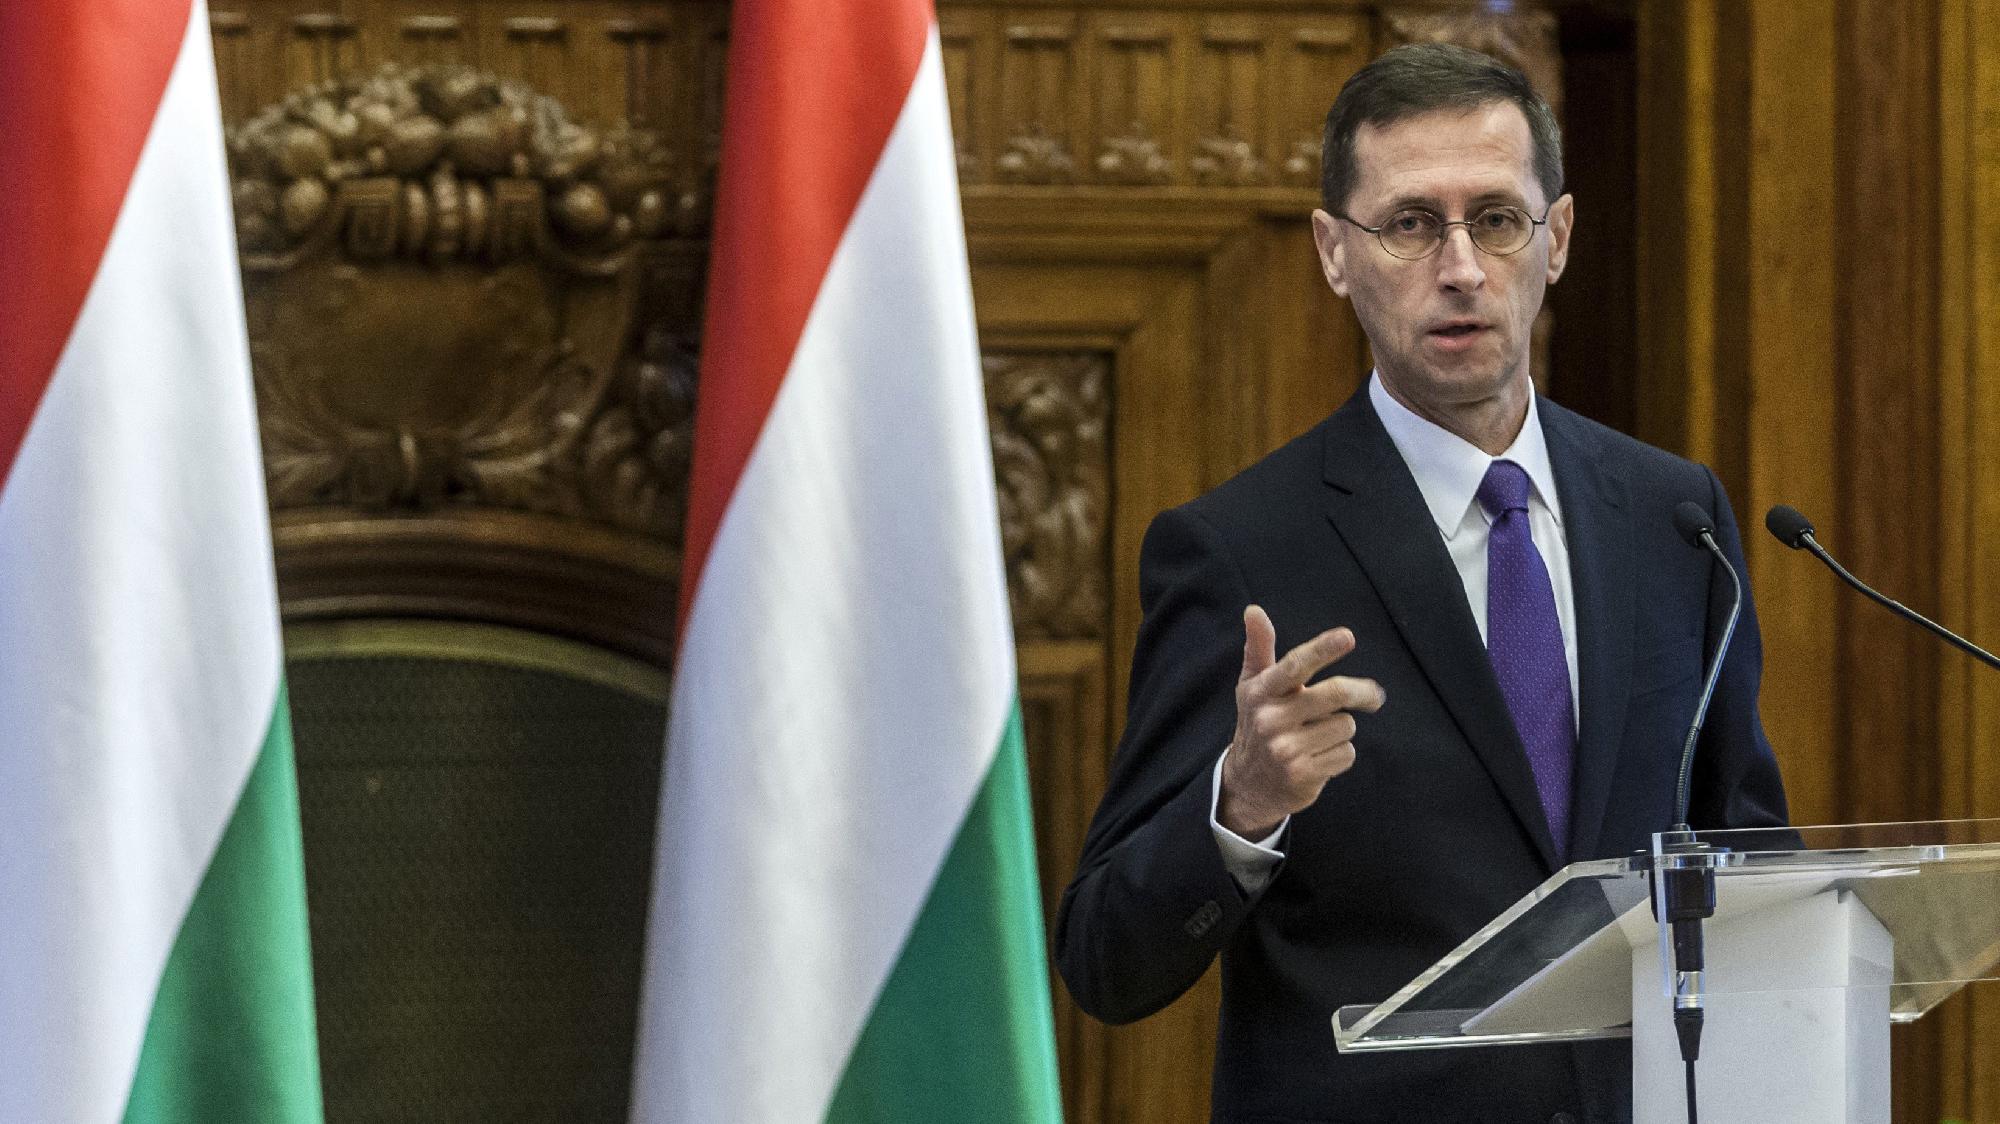 Varga Mihály: Magyarország fejlődik a leggyorsabban az unióban